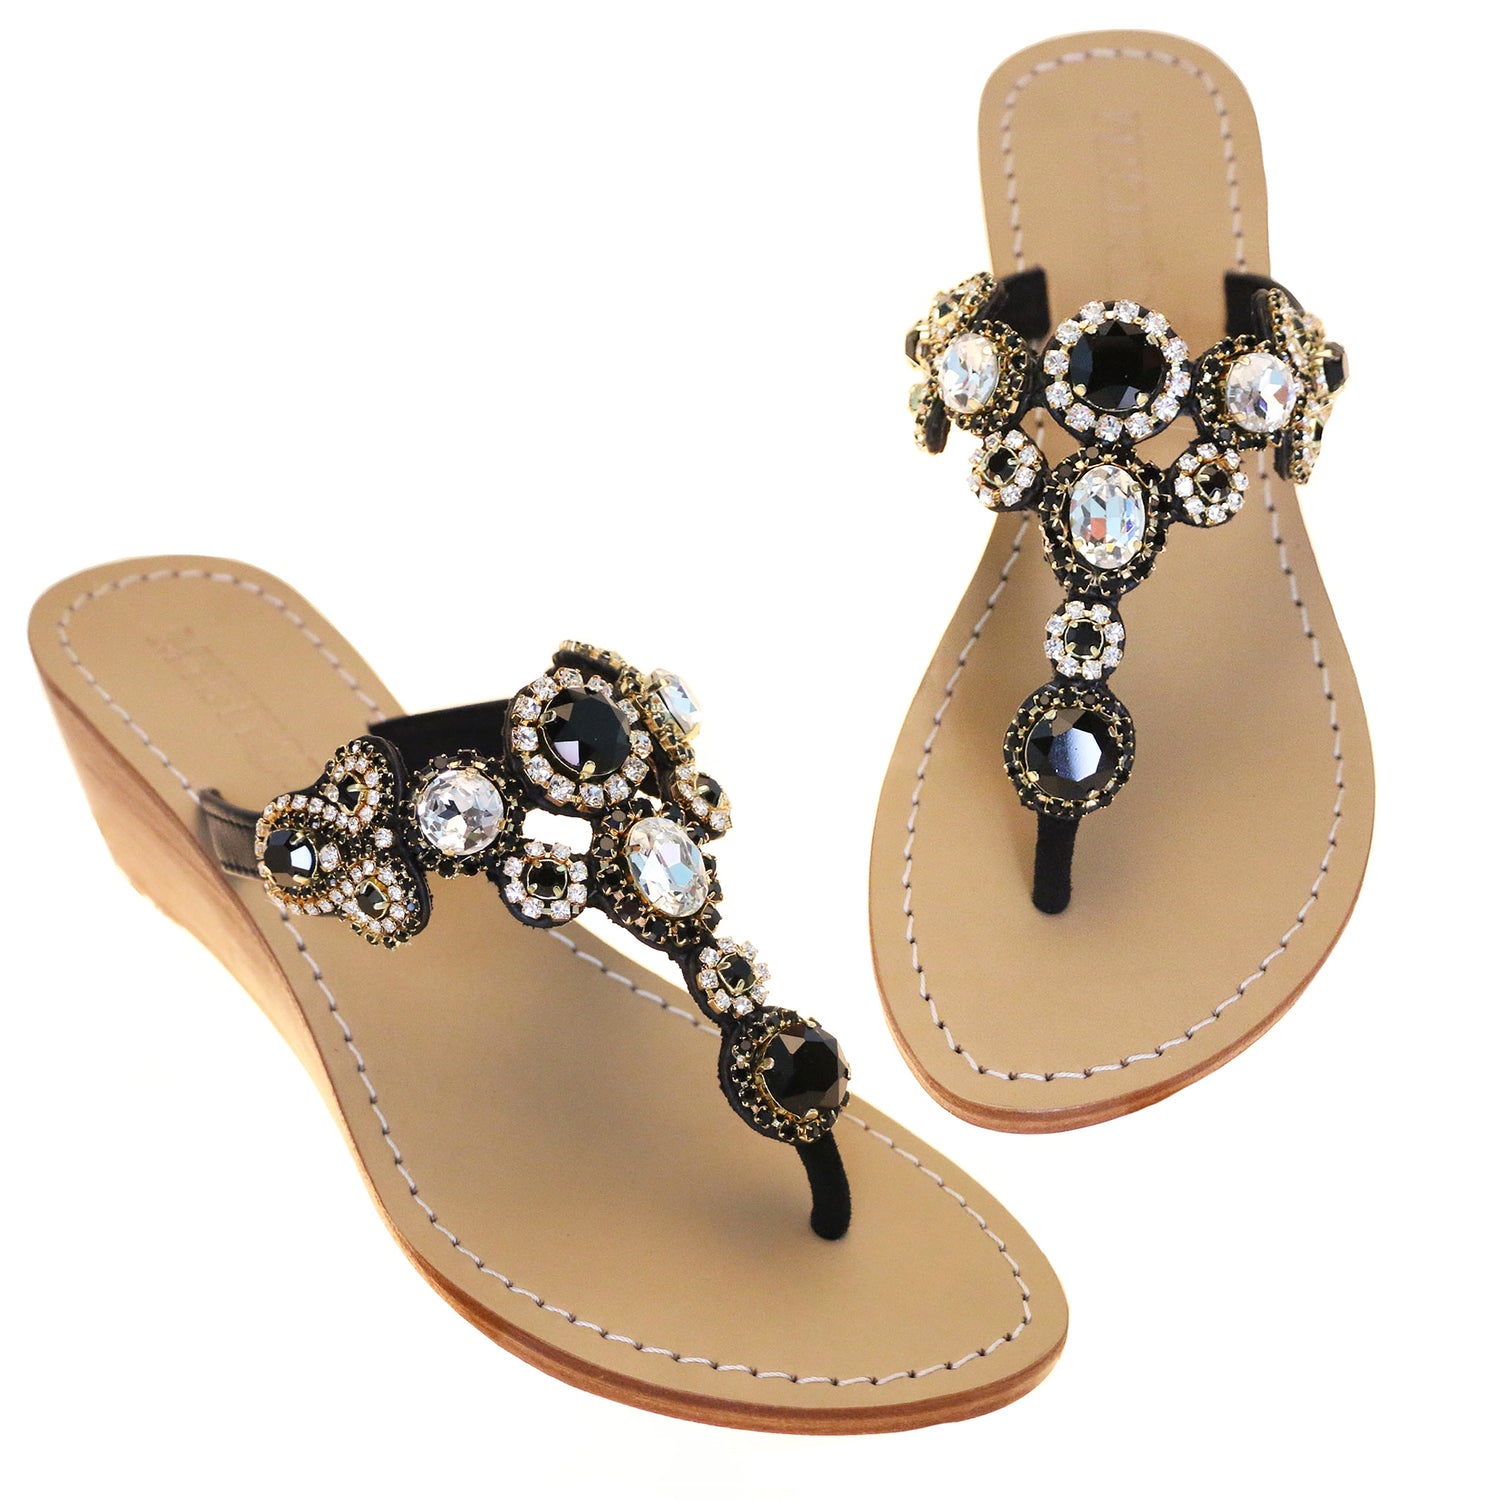 Las Vegas Women's Black Jeweled Wedge Sandals Mystique Sandals